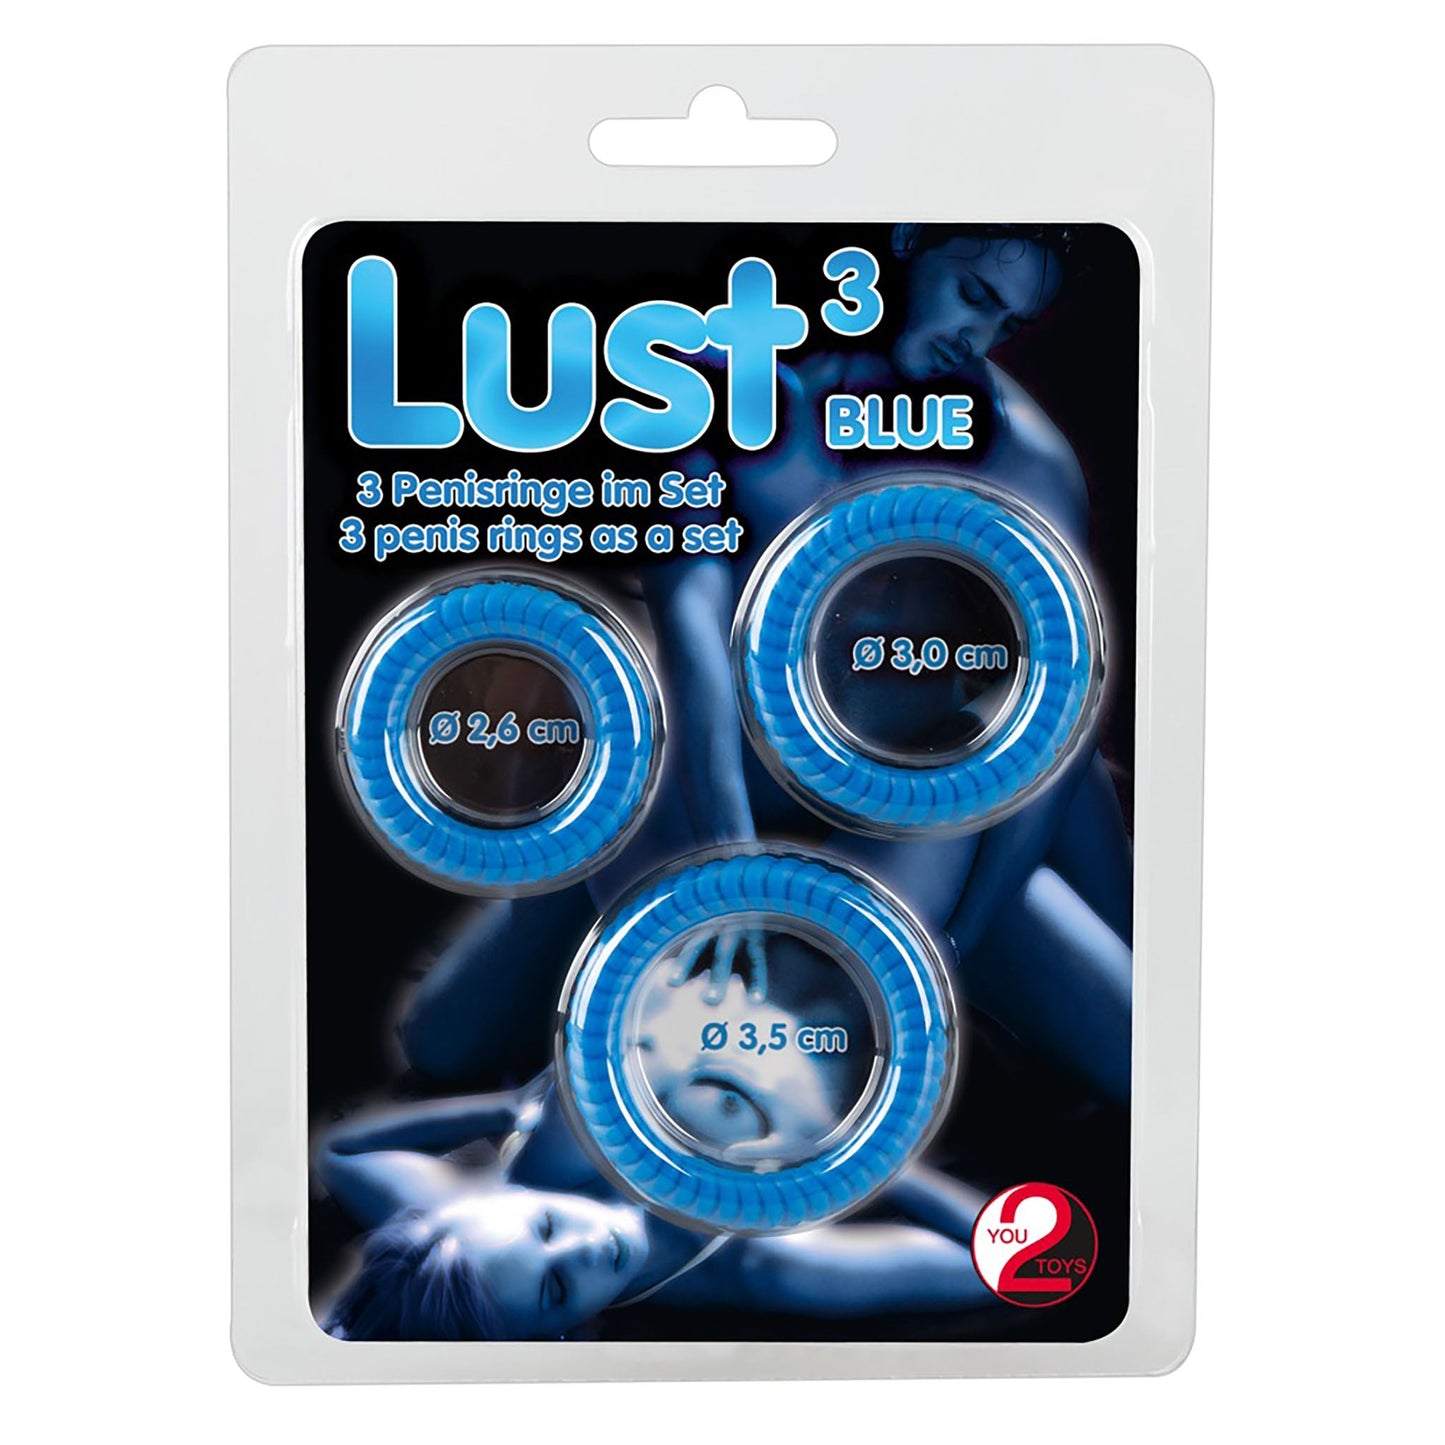 Lust 3 Penisringe, Penis ring set blau in Verpackung